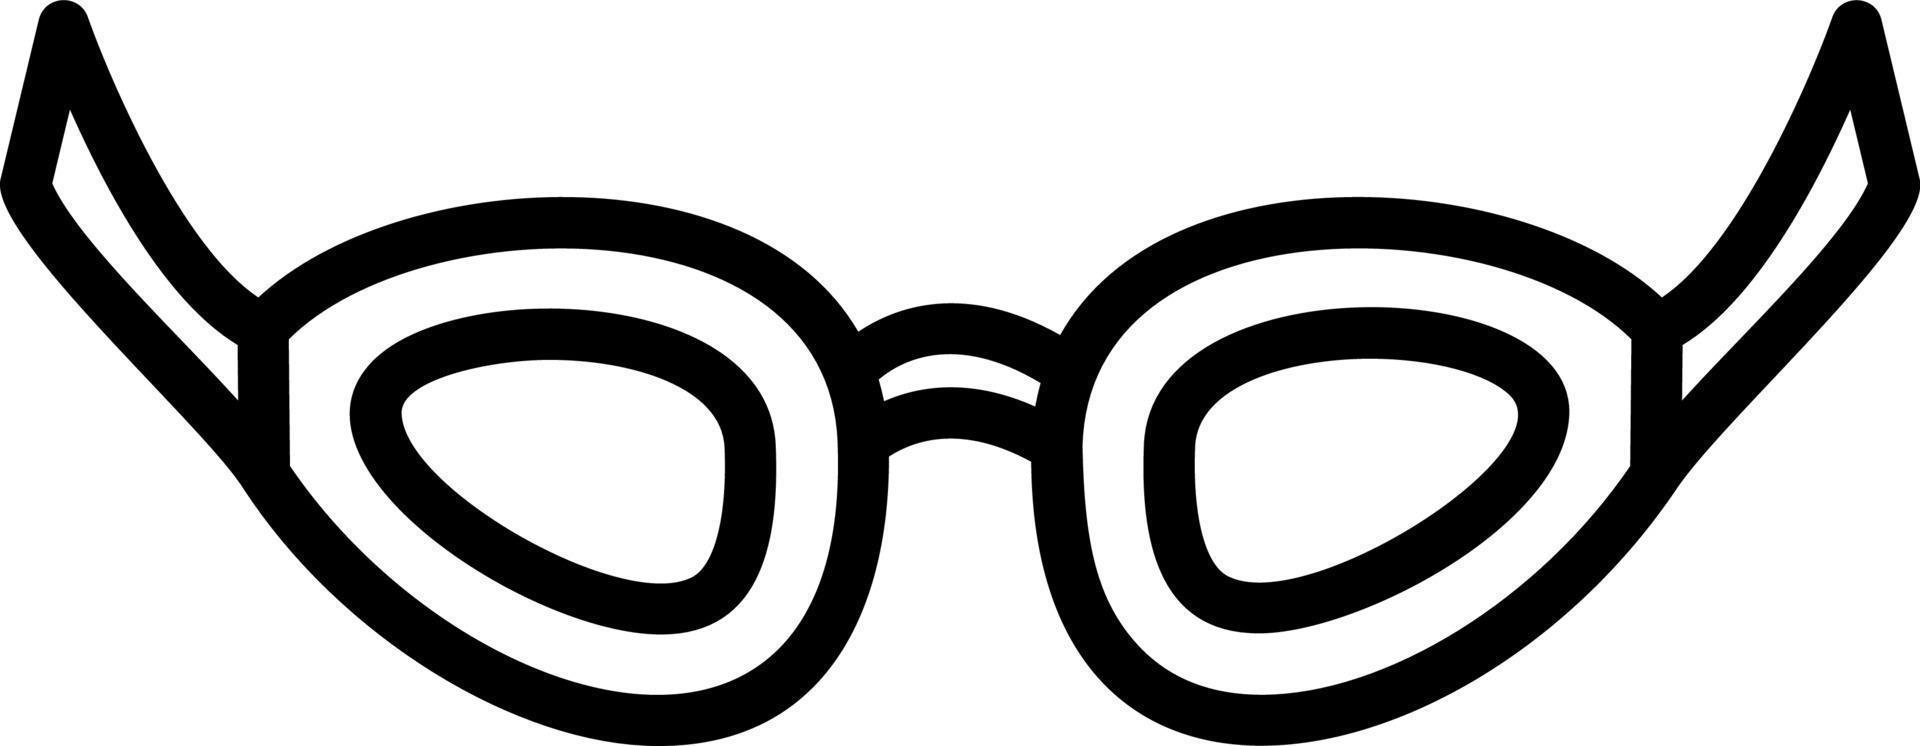 design de ícone de vetor de óculos de natação